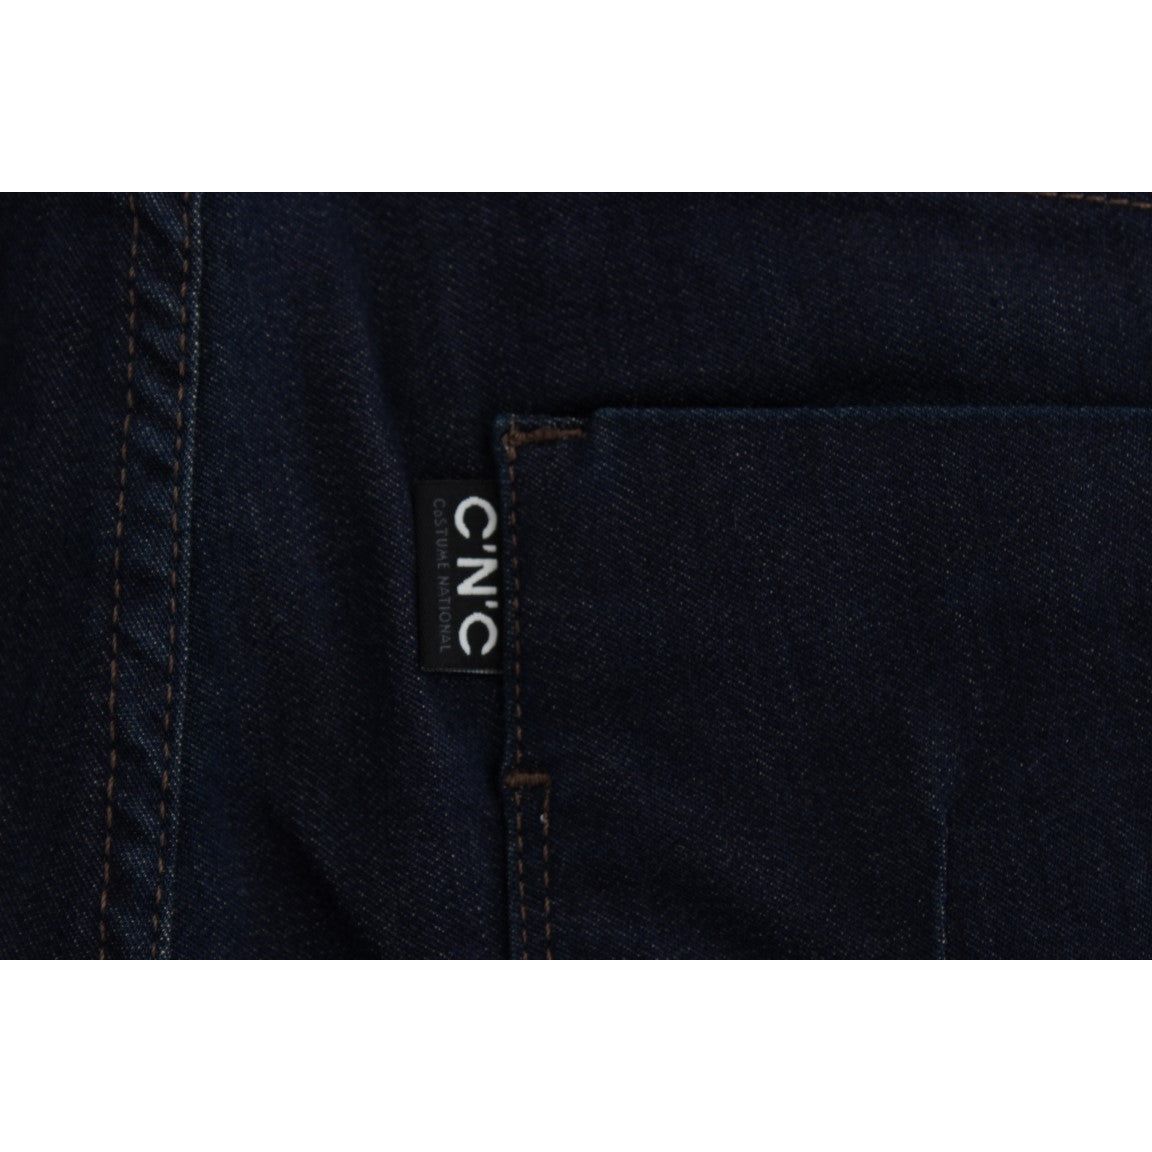 Costume National Sleek Slim Fit Designer Denim Jeans & Pants blue-cotton-blend-slim-fit-jeans-2 318686-blue-cotton-blend-slim-fit-jeans-4-8.jpg